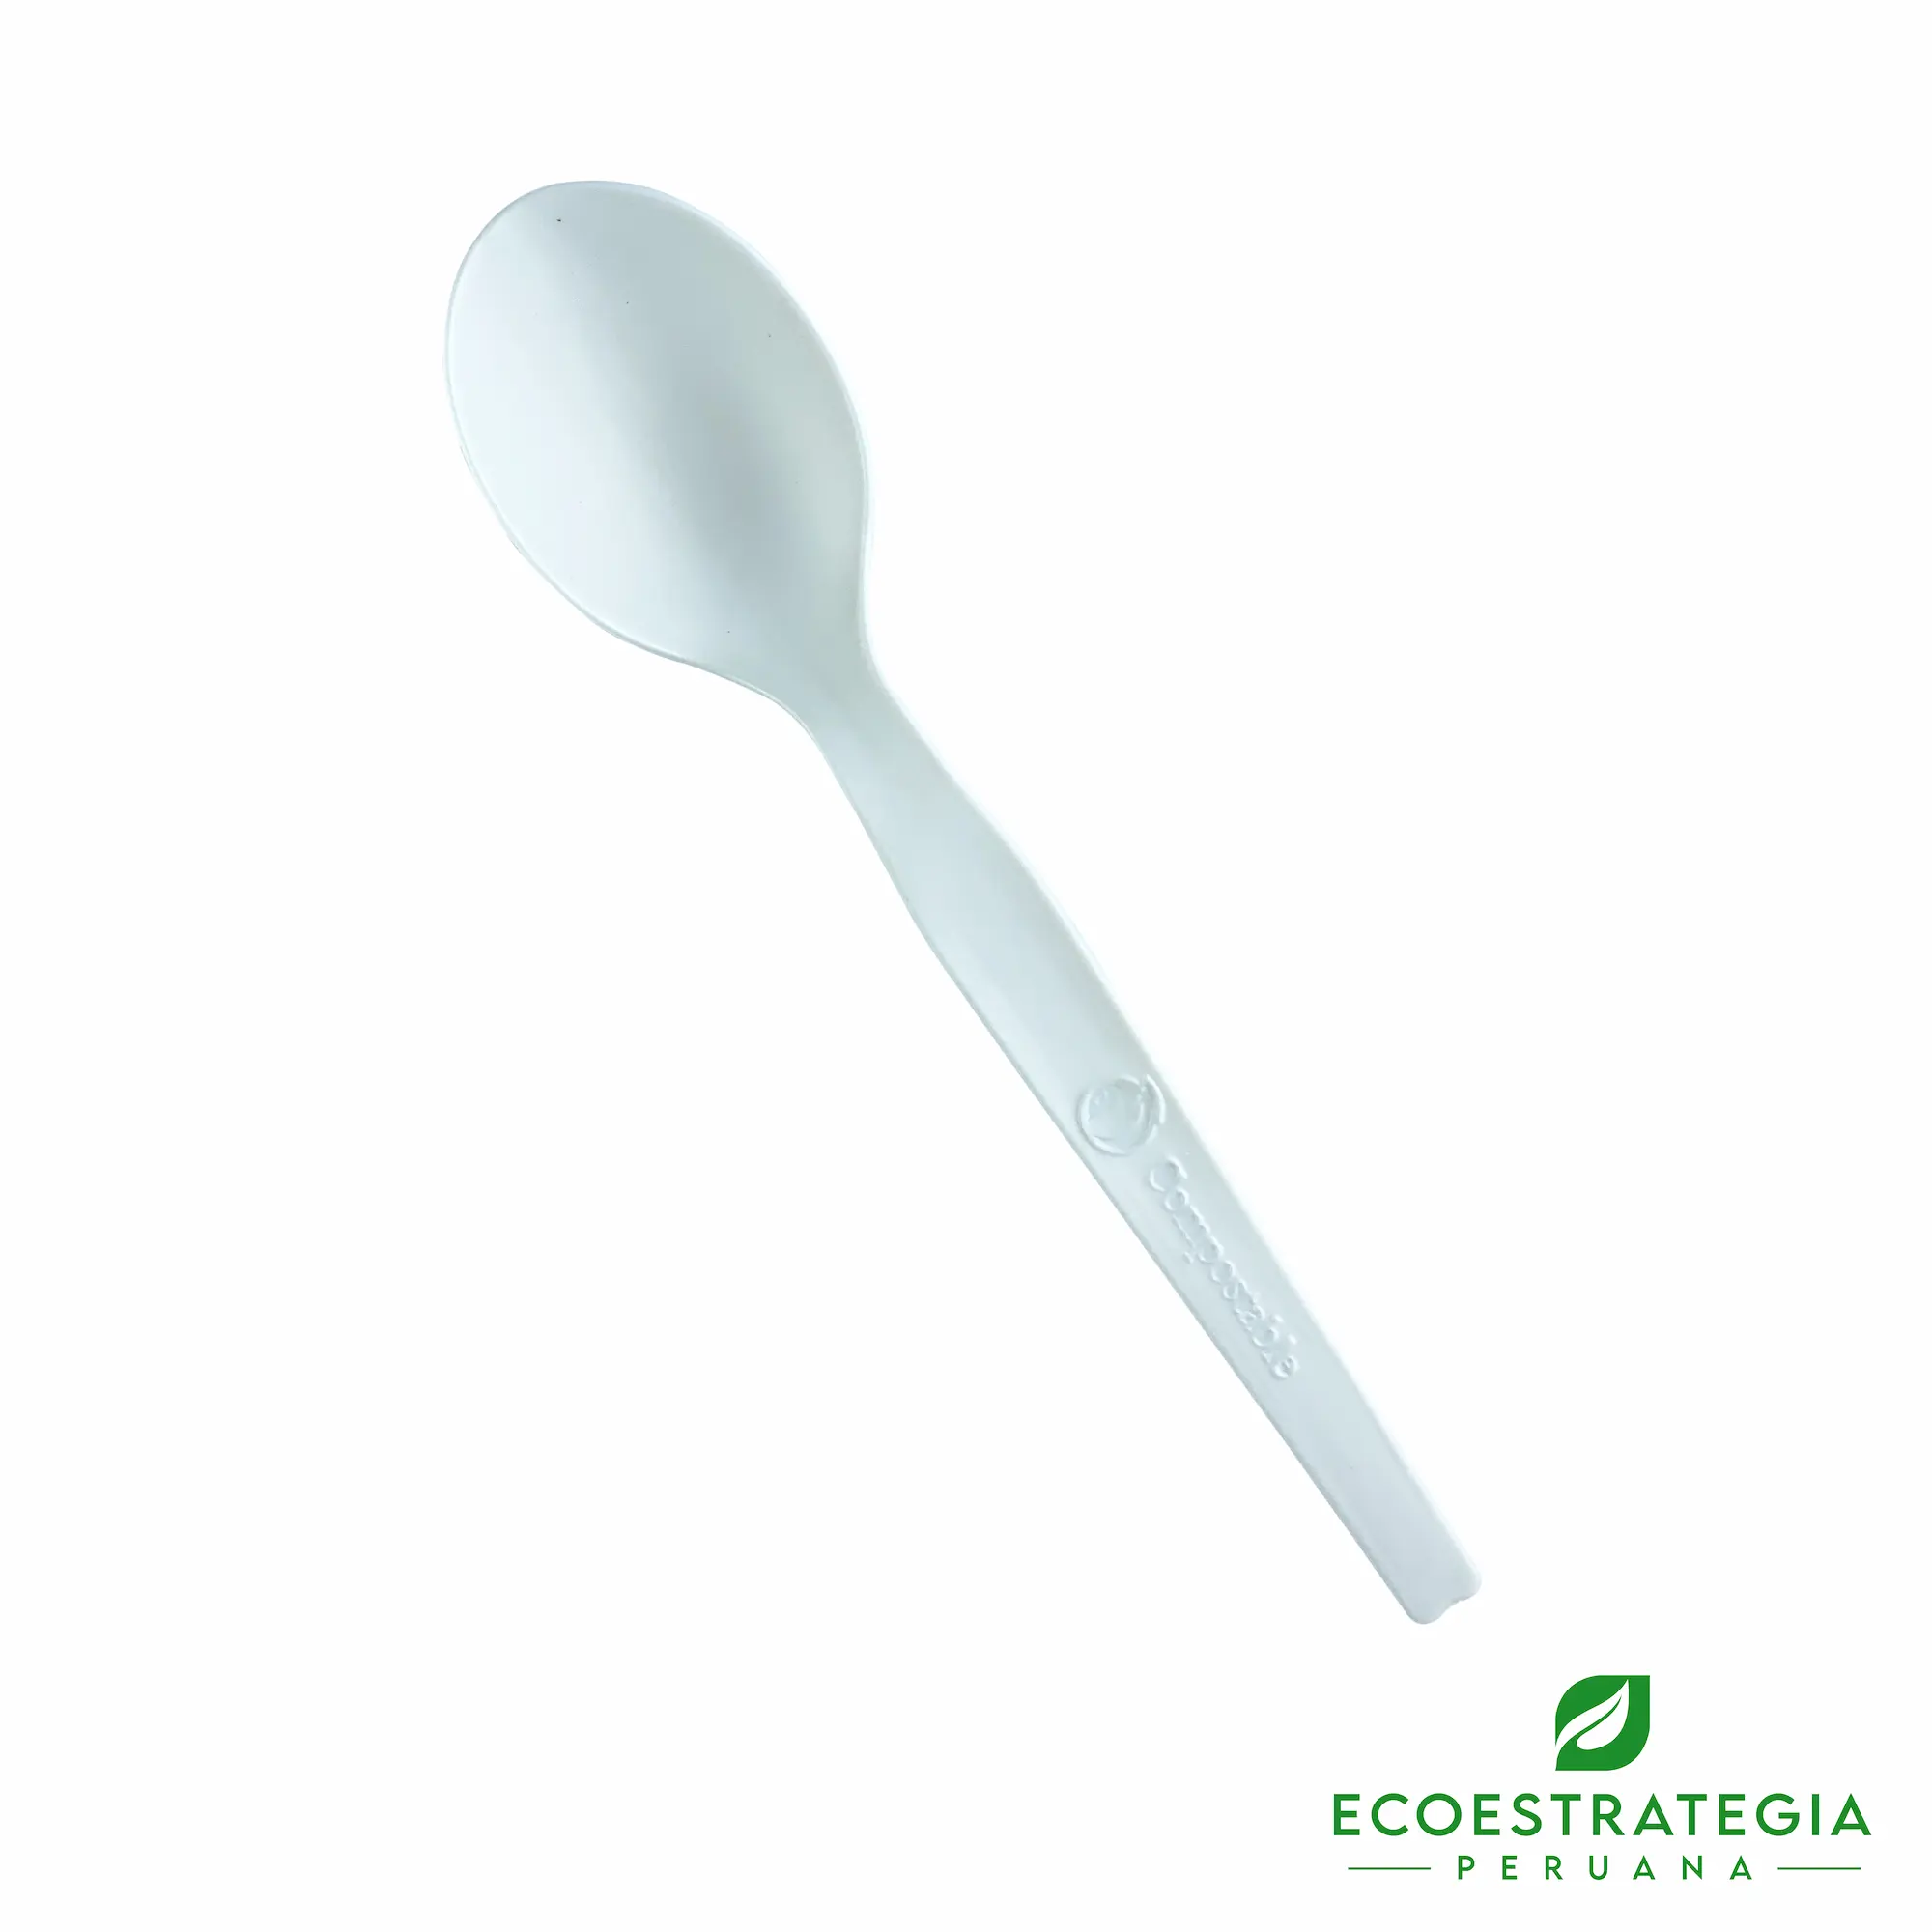 La cuchara biodegradable EP-C es un cubierto descartable ecologico y desechable hechos a base de fecula de maíz